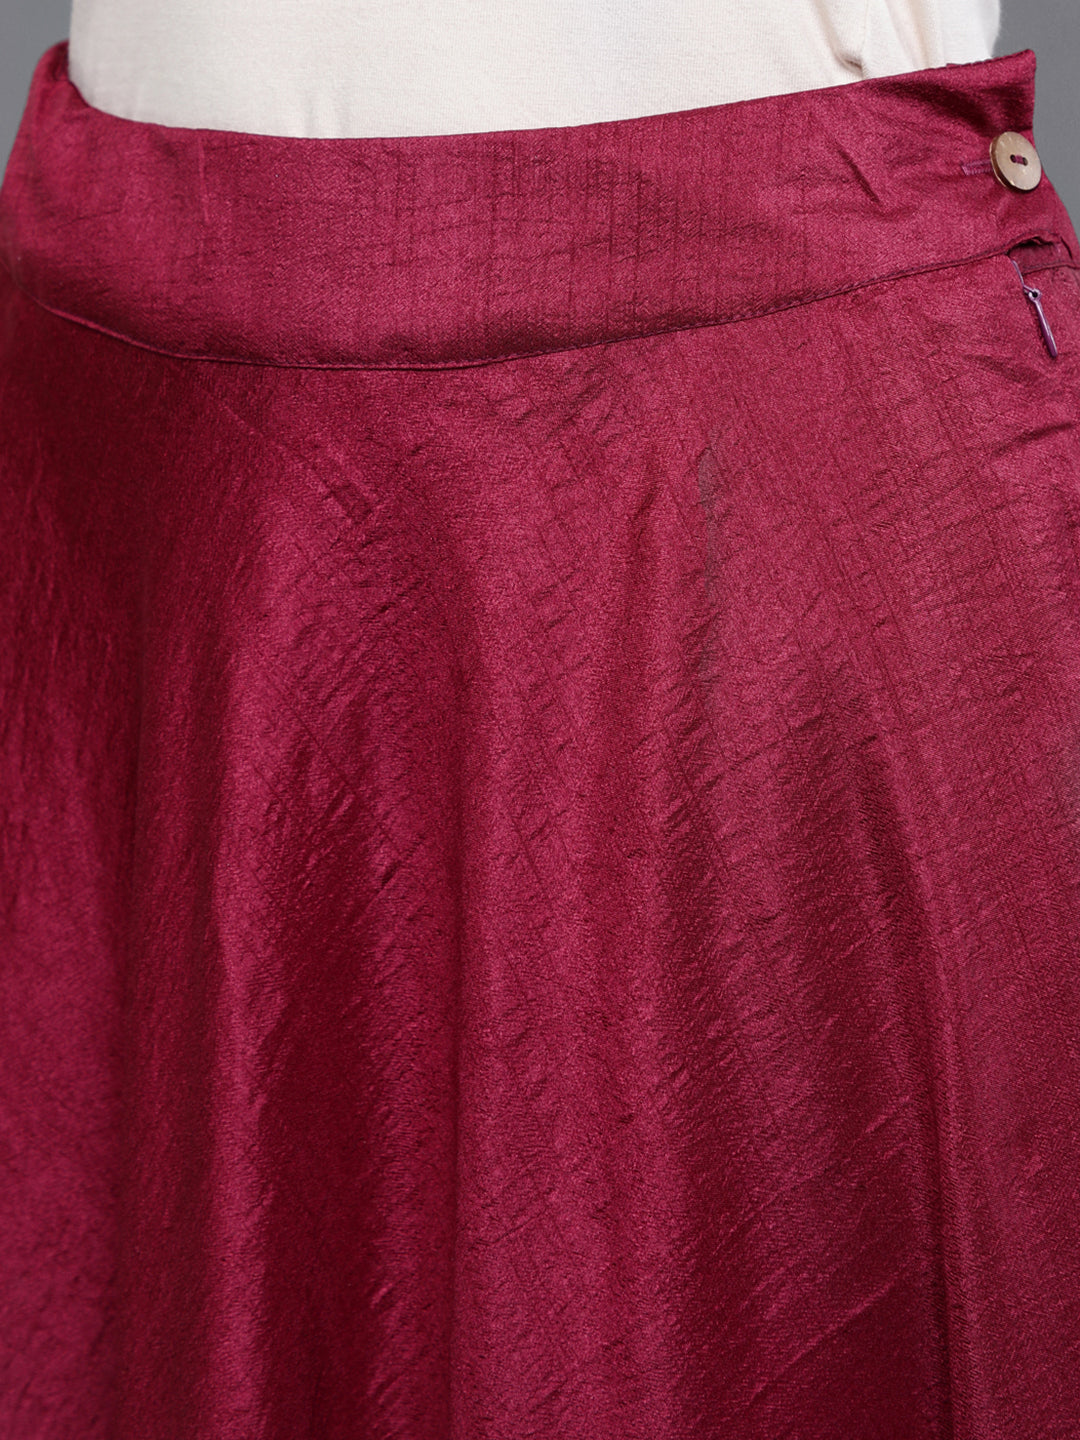 Burgundy Foil Print Kurta With Skirt